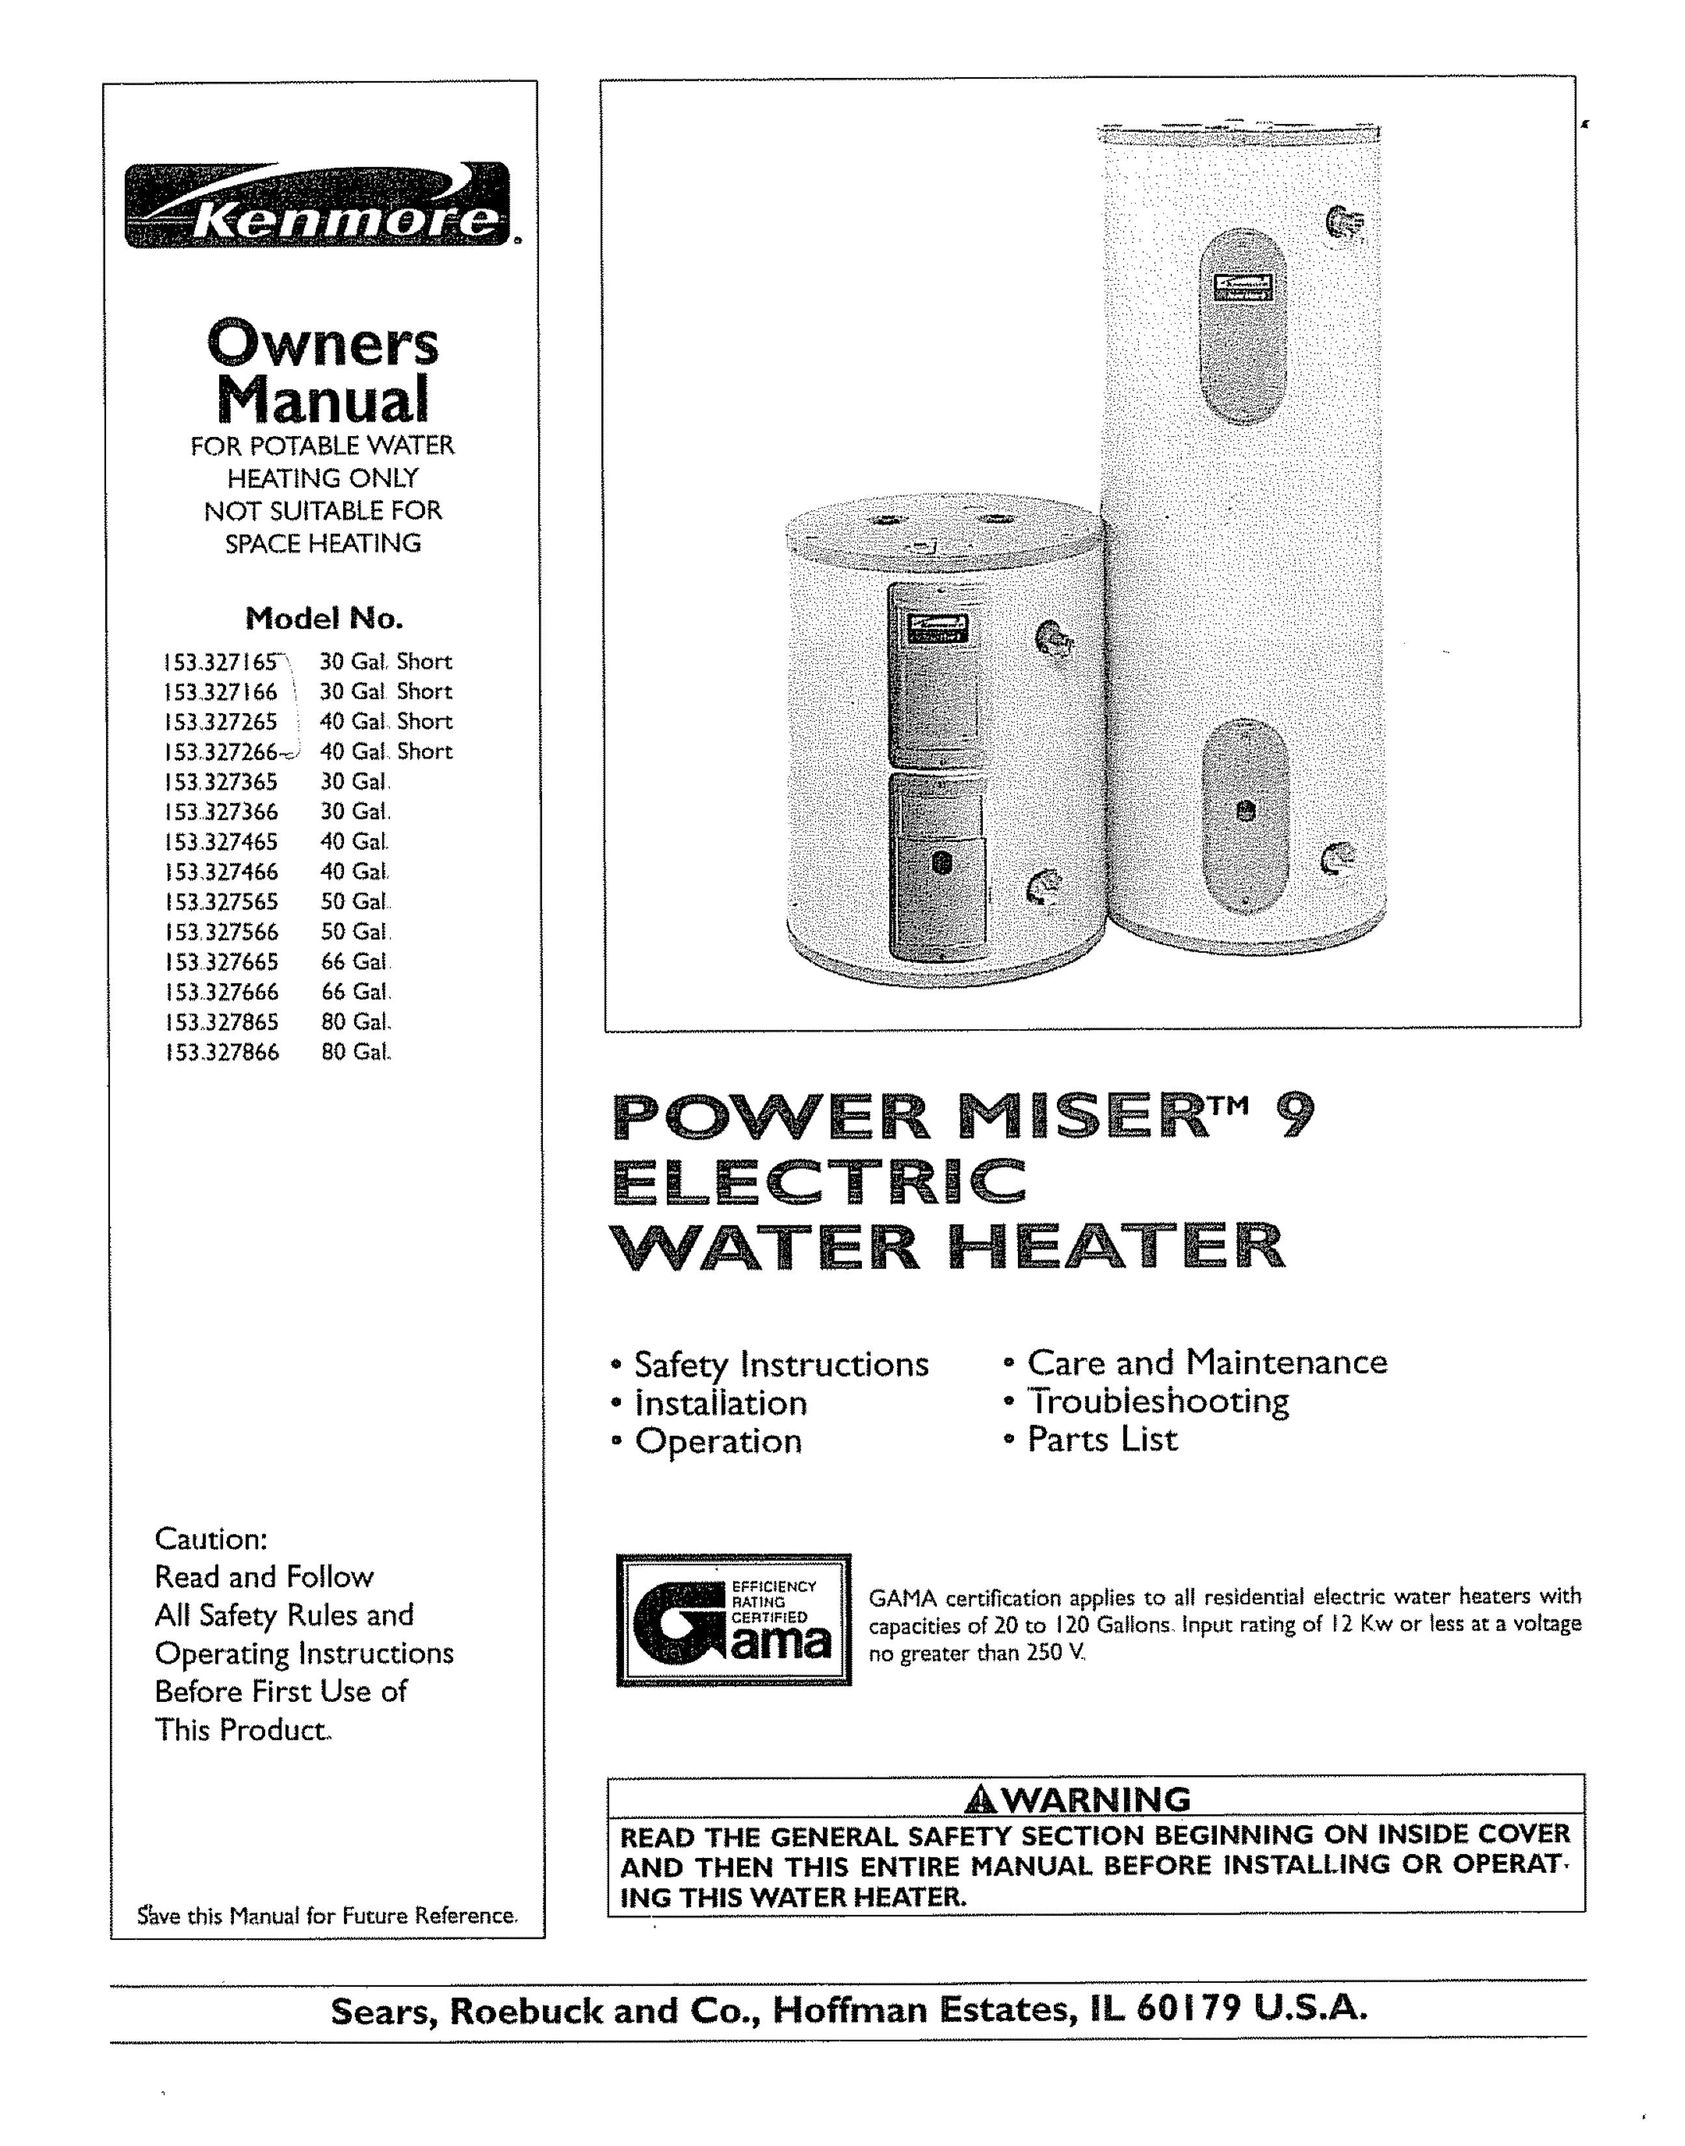 Kenmore 153 327566 50 GAE Water Heater User Manual